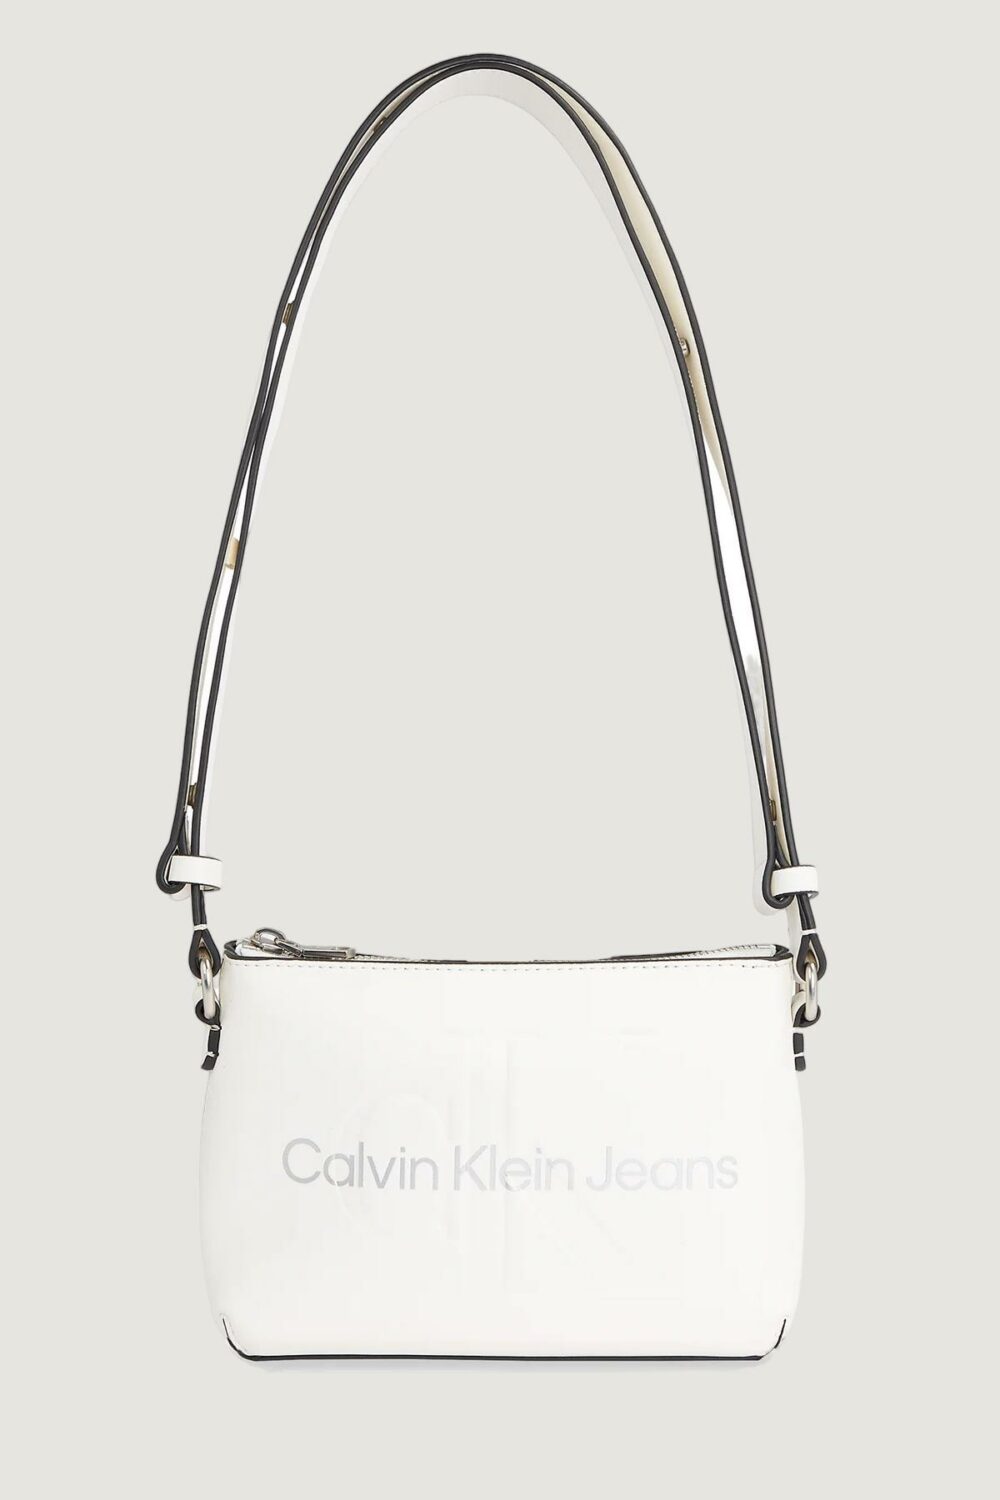 Borsa Calvin Klein Jeans SCULPTED CAMERA POUCH21 MONO Panna - Foto 2